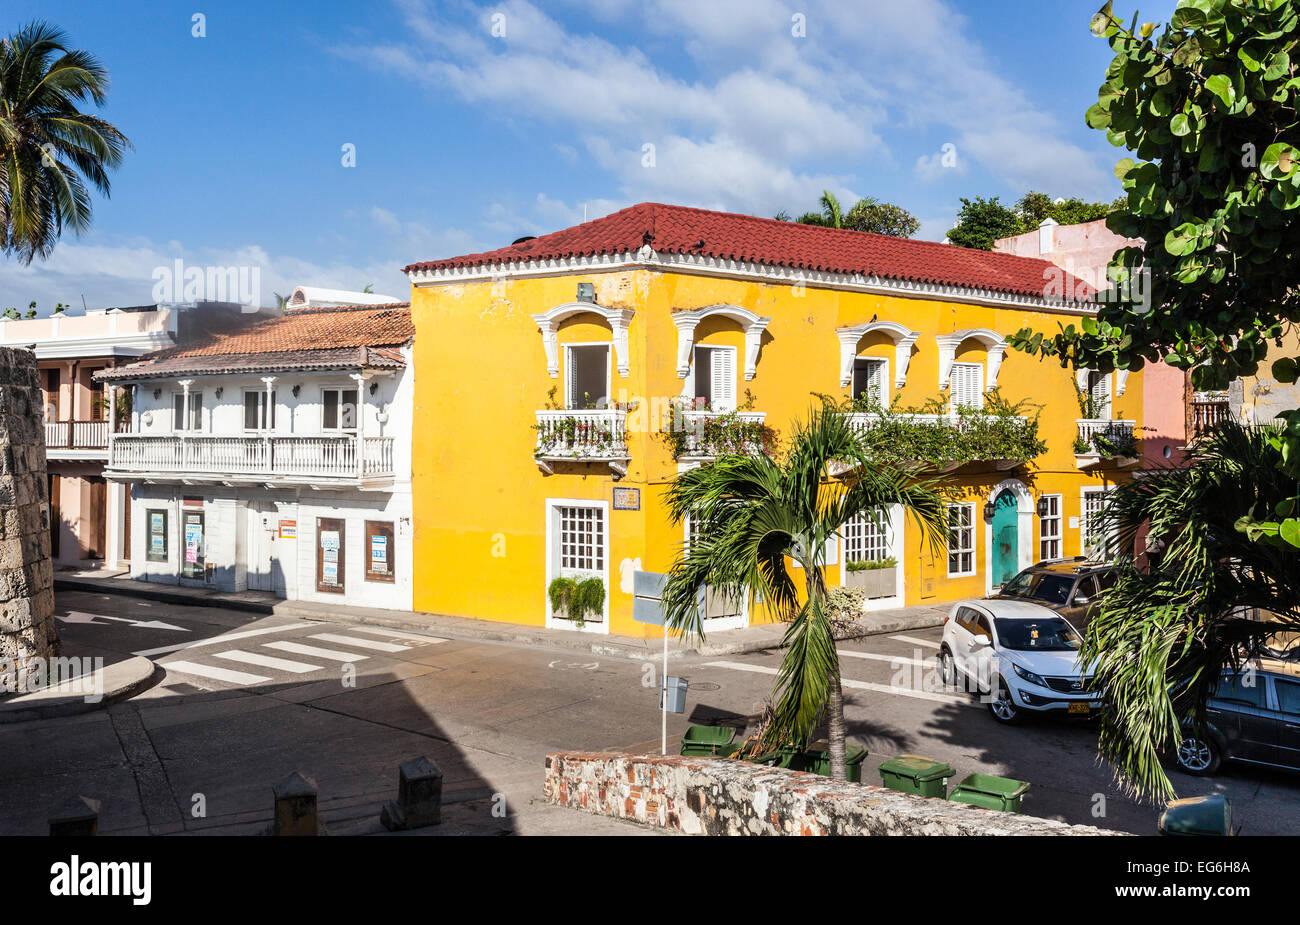 Maisons coloniales espagnoles, la plage de Carril, Cartagena de Indias, Colombie. Banque D'Images